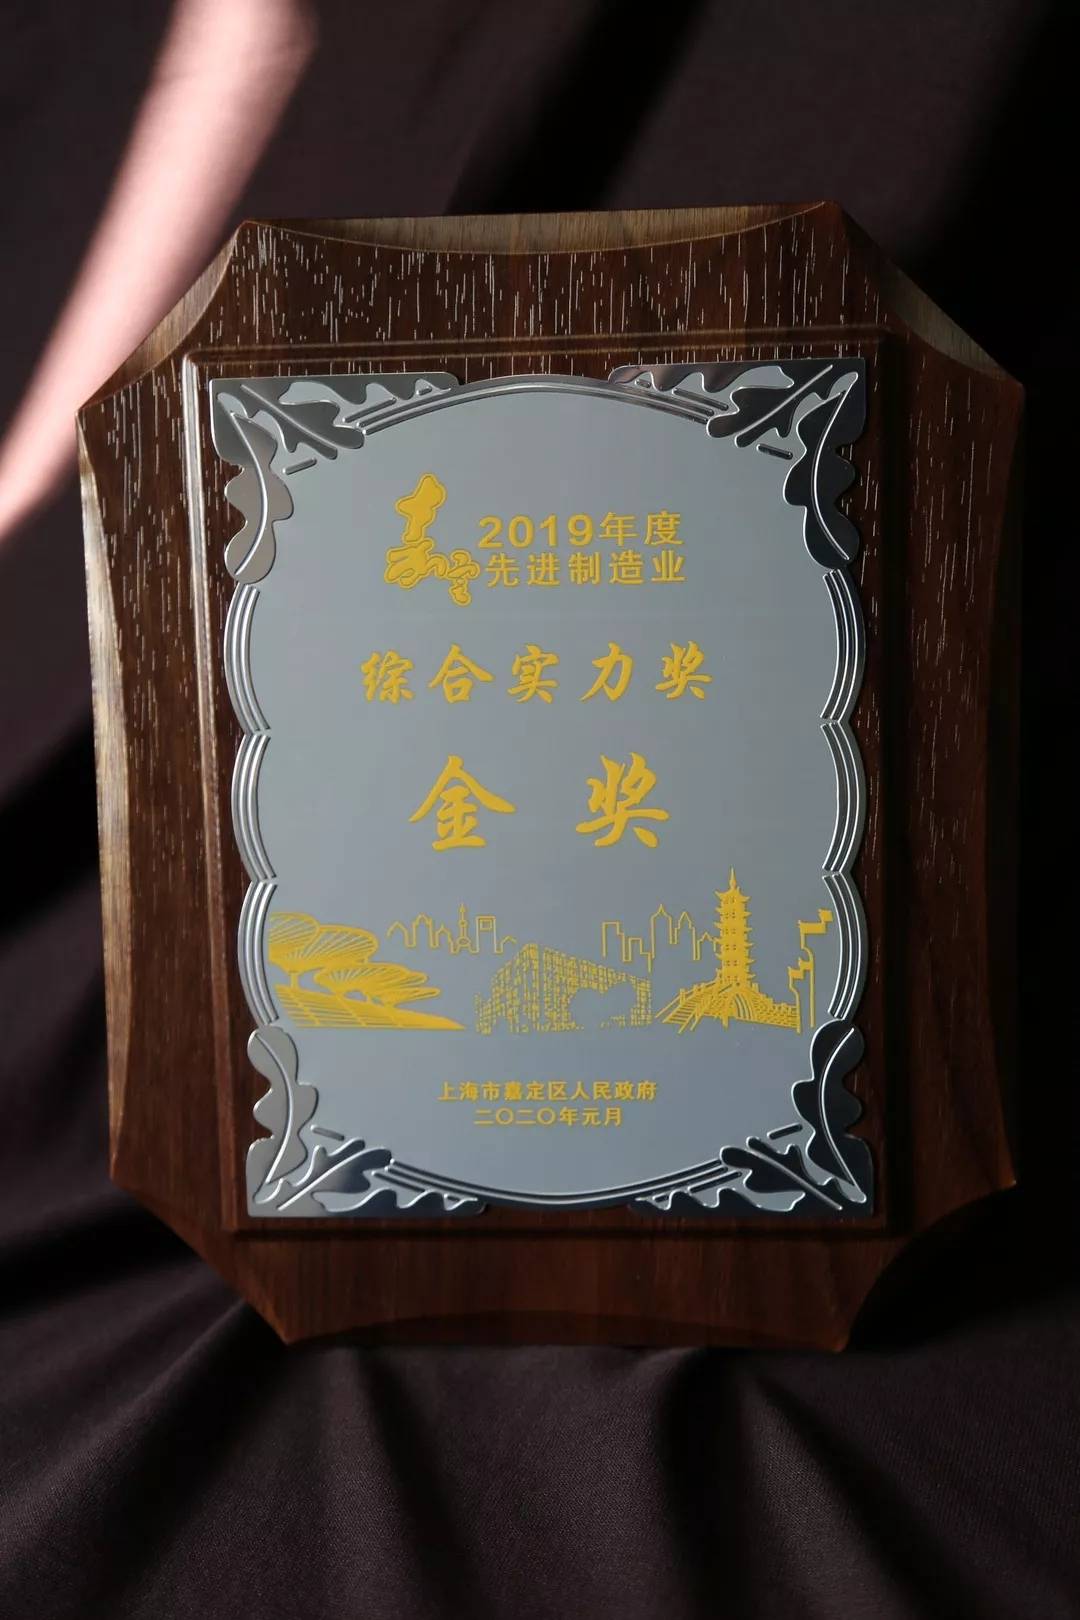 Лянчэнг "Шанхайн Жядин дүүргийн дэвшилтэт үйлдвэрлэлийн салбарын иж бүрэн хүч чадлын шагнал"-аар шагнасан.